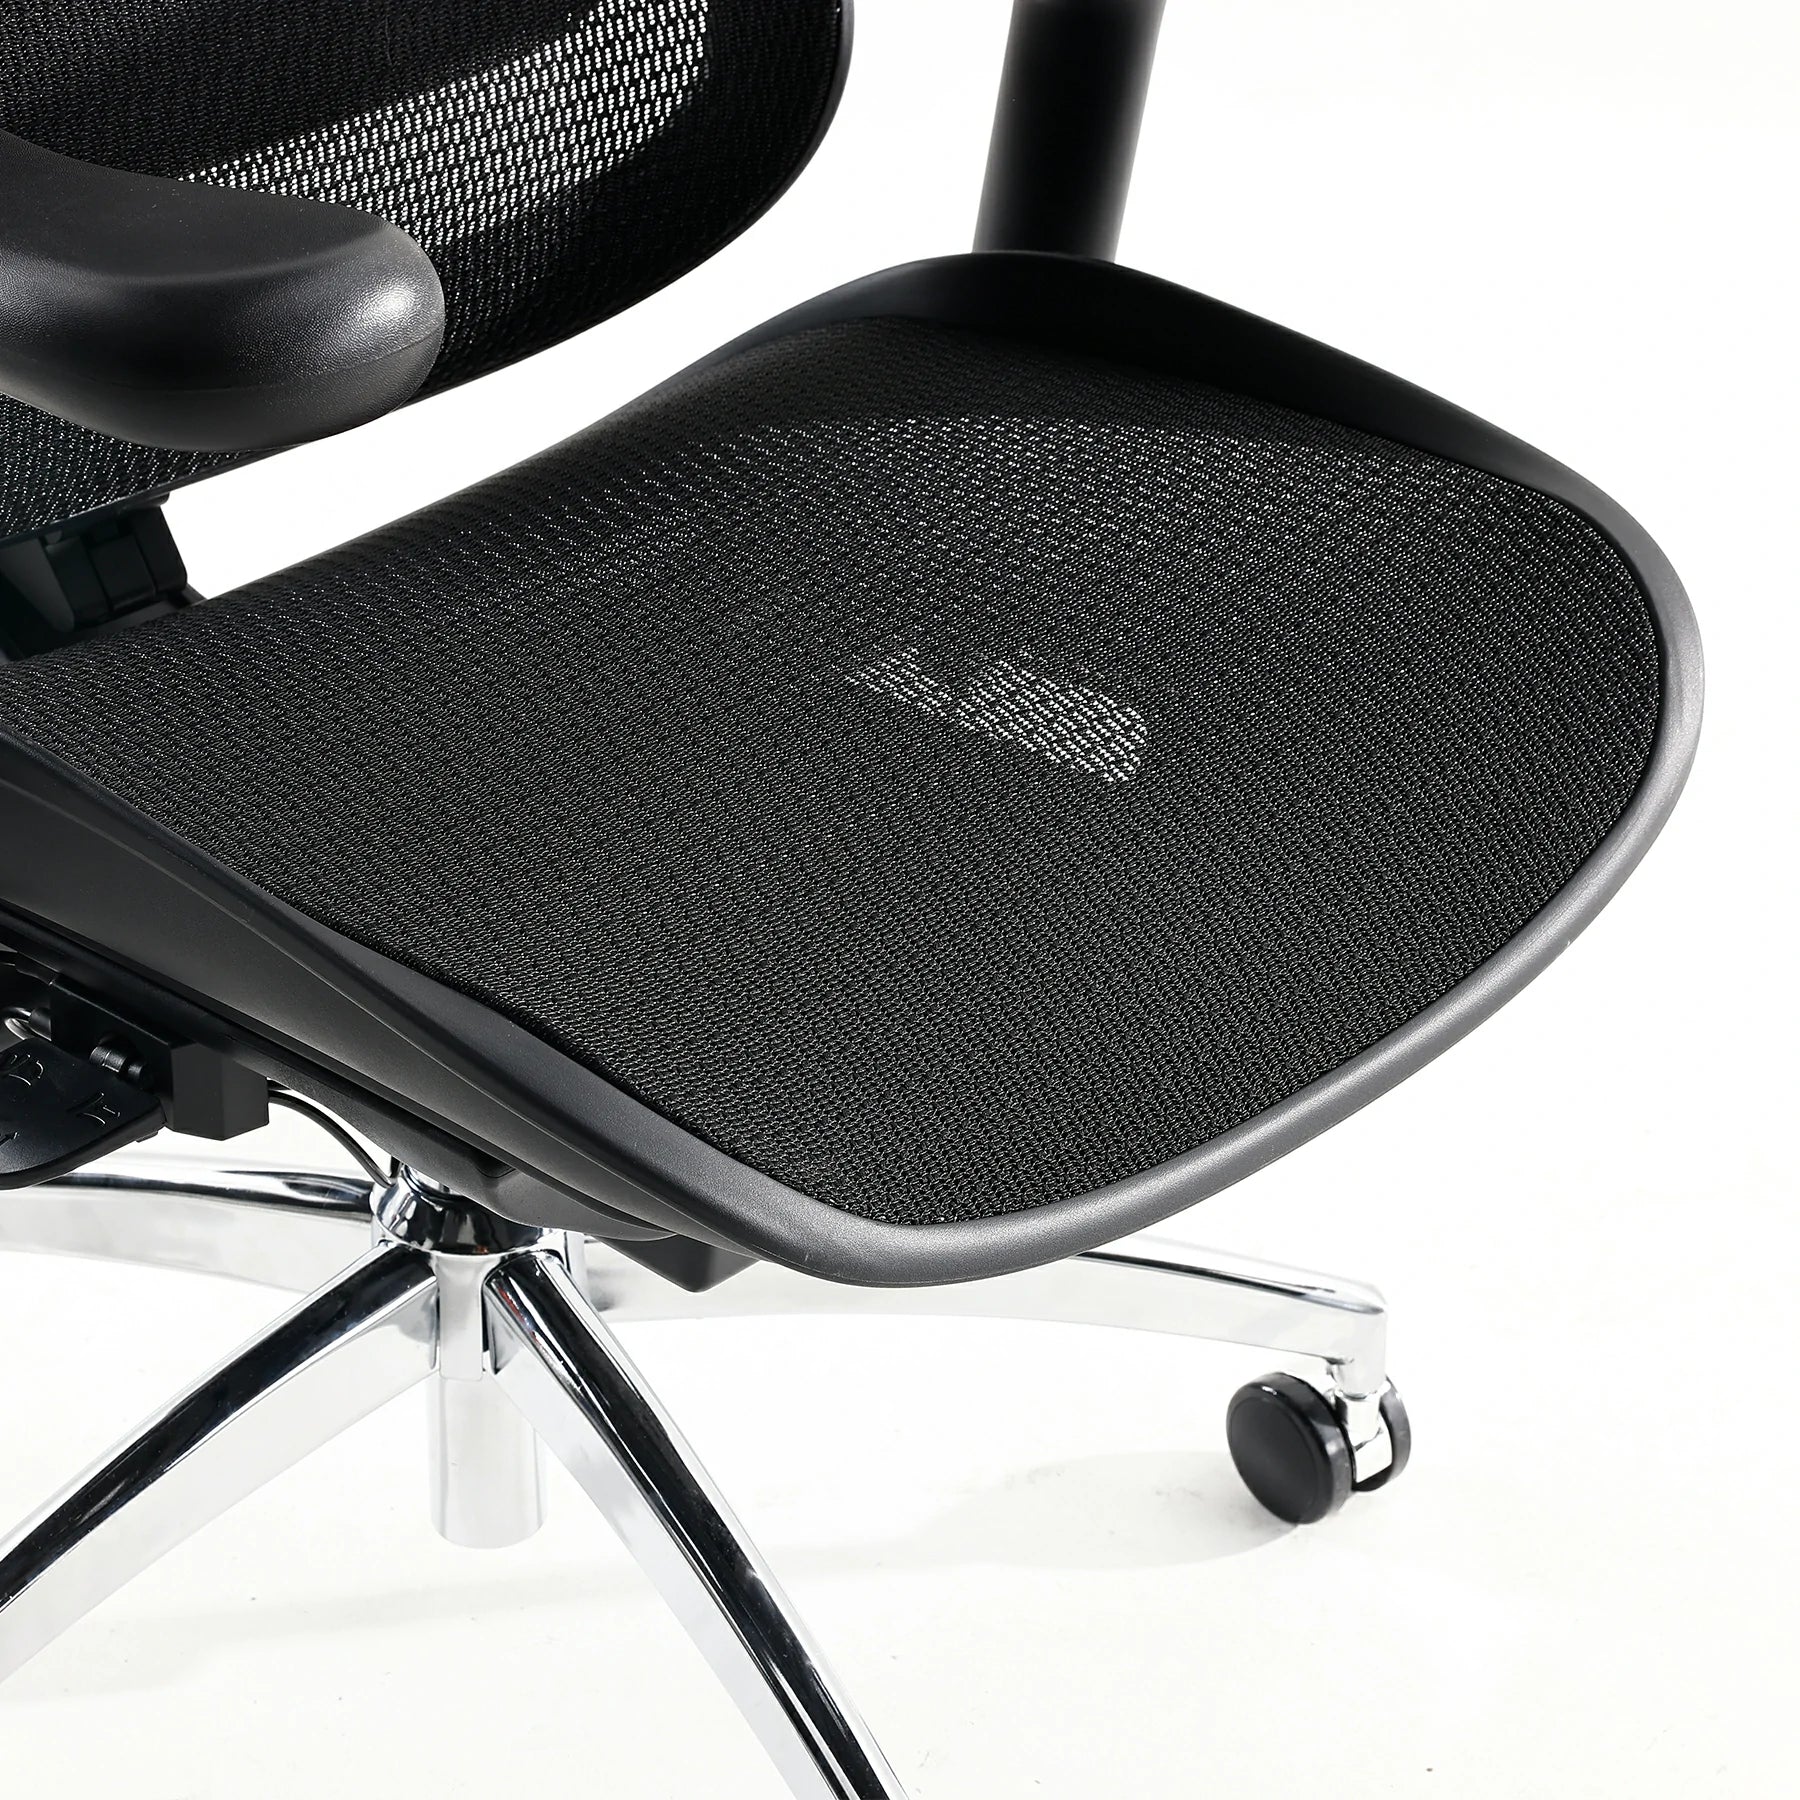 Sihoo Doro C300 Pro Ergonomic Chair